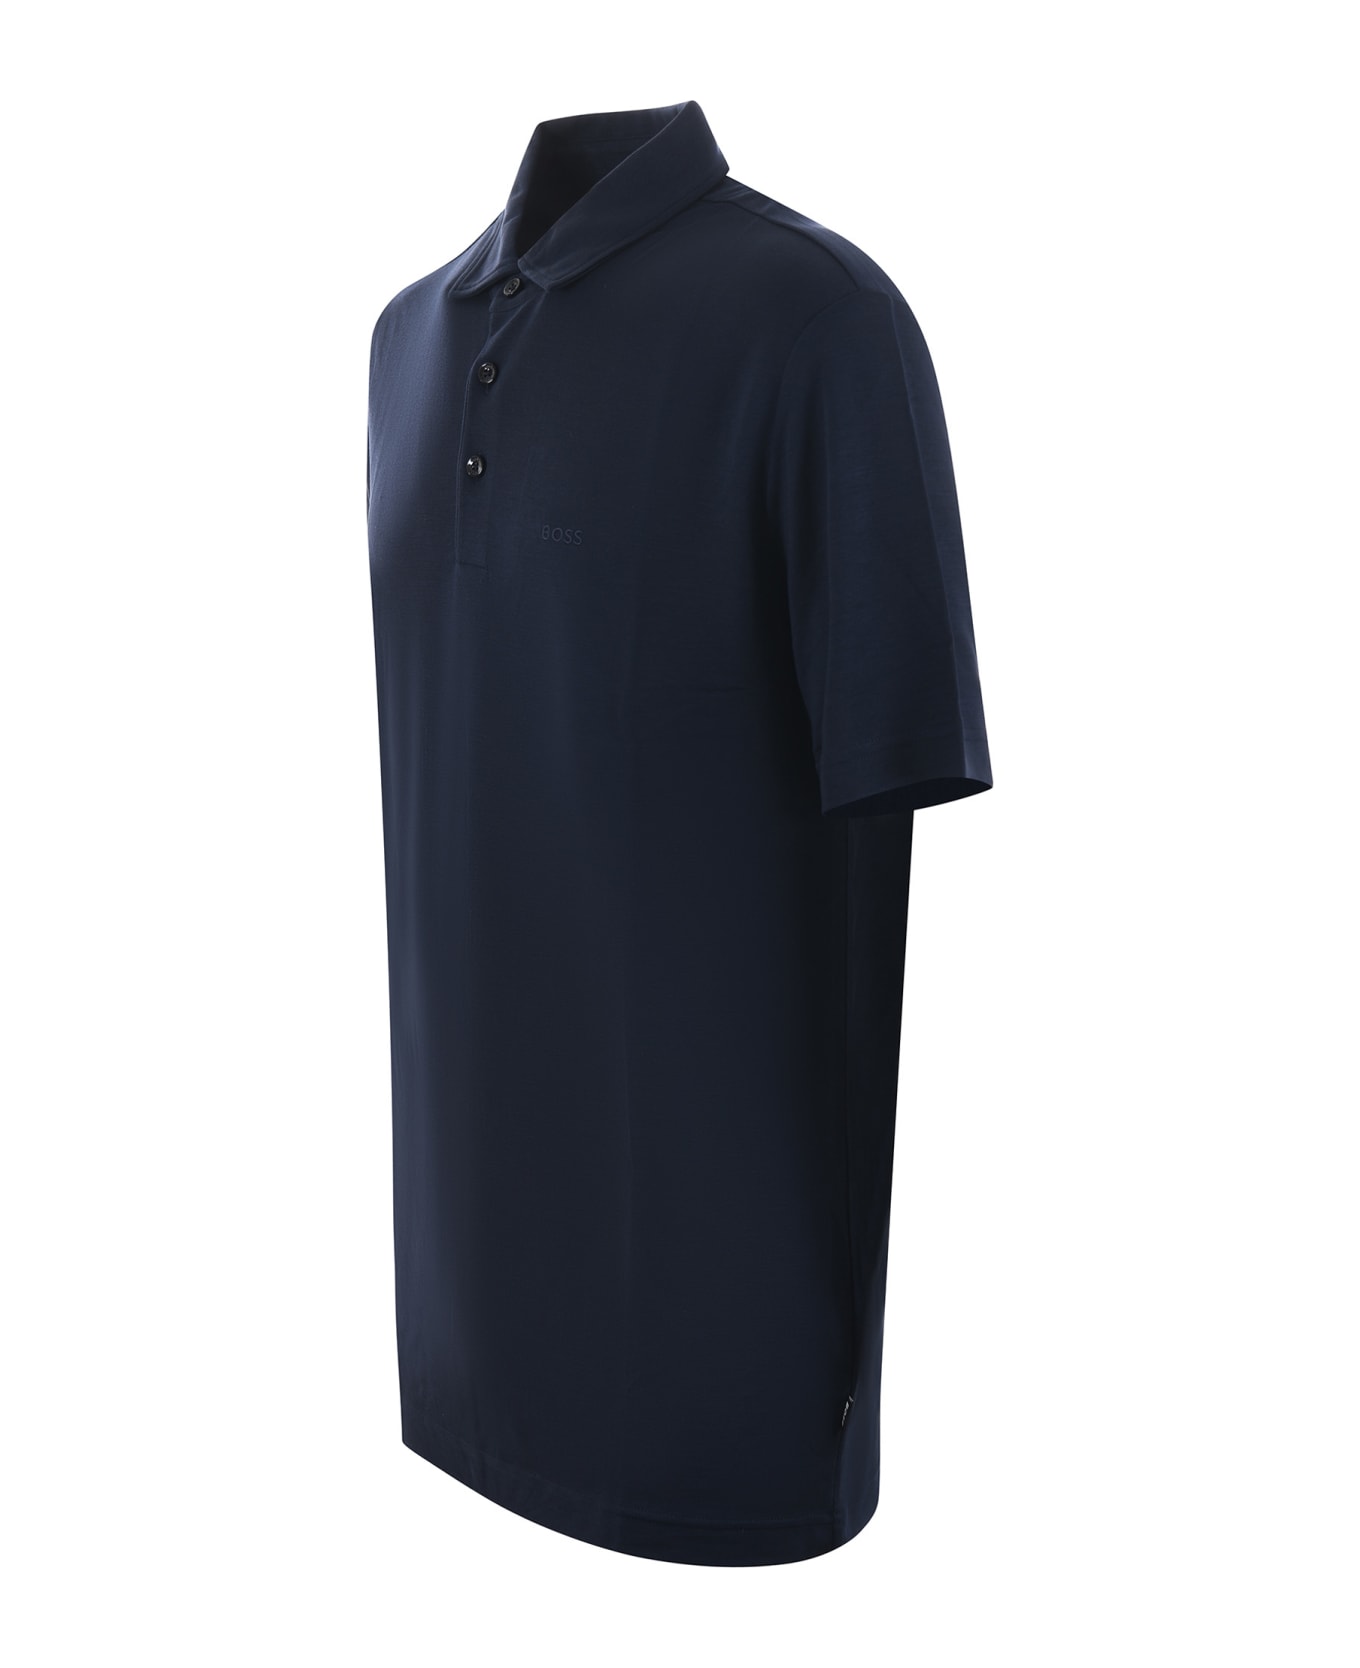 Hugo Boss Boss Polo Shirt - Blu scuro